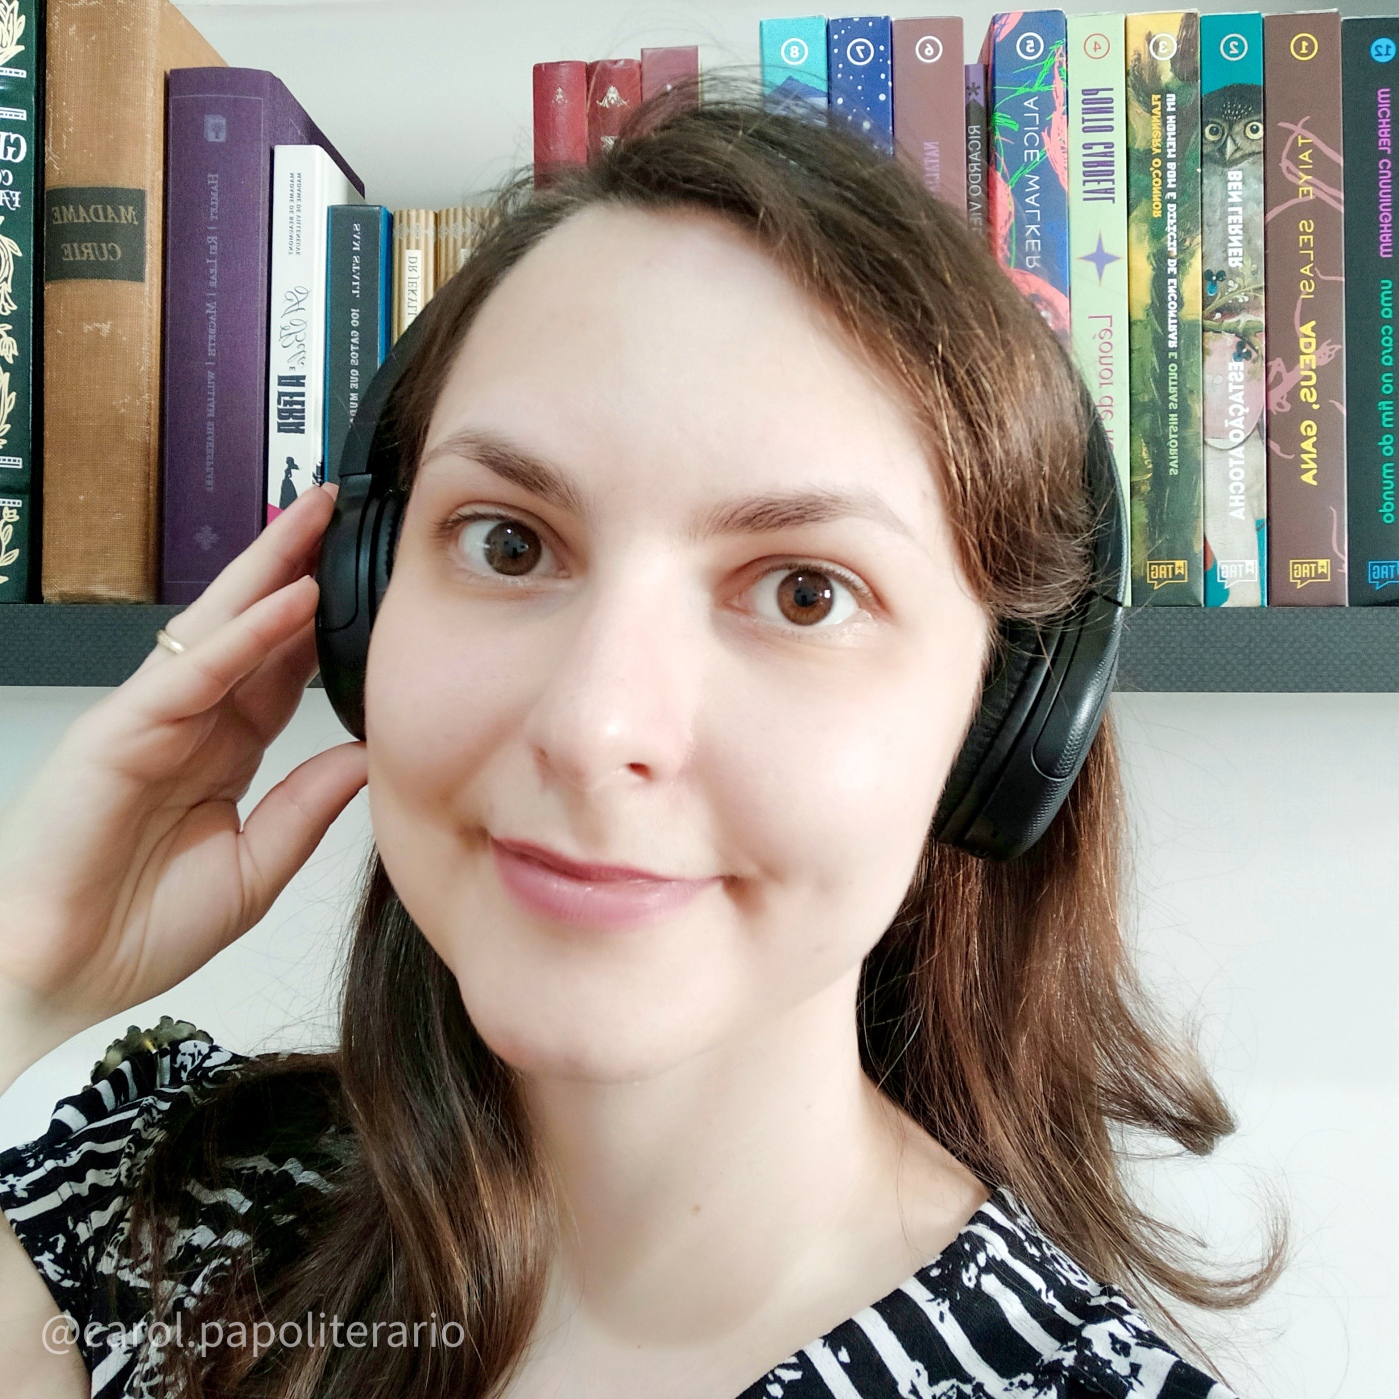 Foto de uma moça sorrindo, com um fone de ouvido estilo headphone, e cabelos soltos. No fundo, há uma estante de livros.